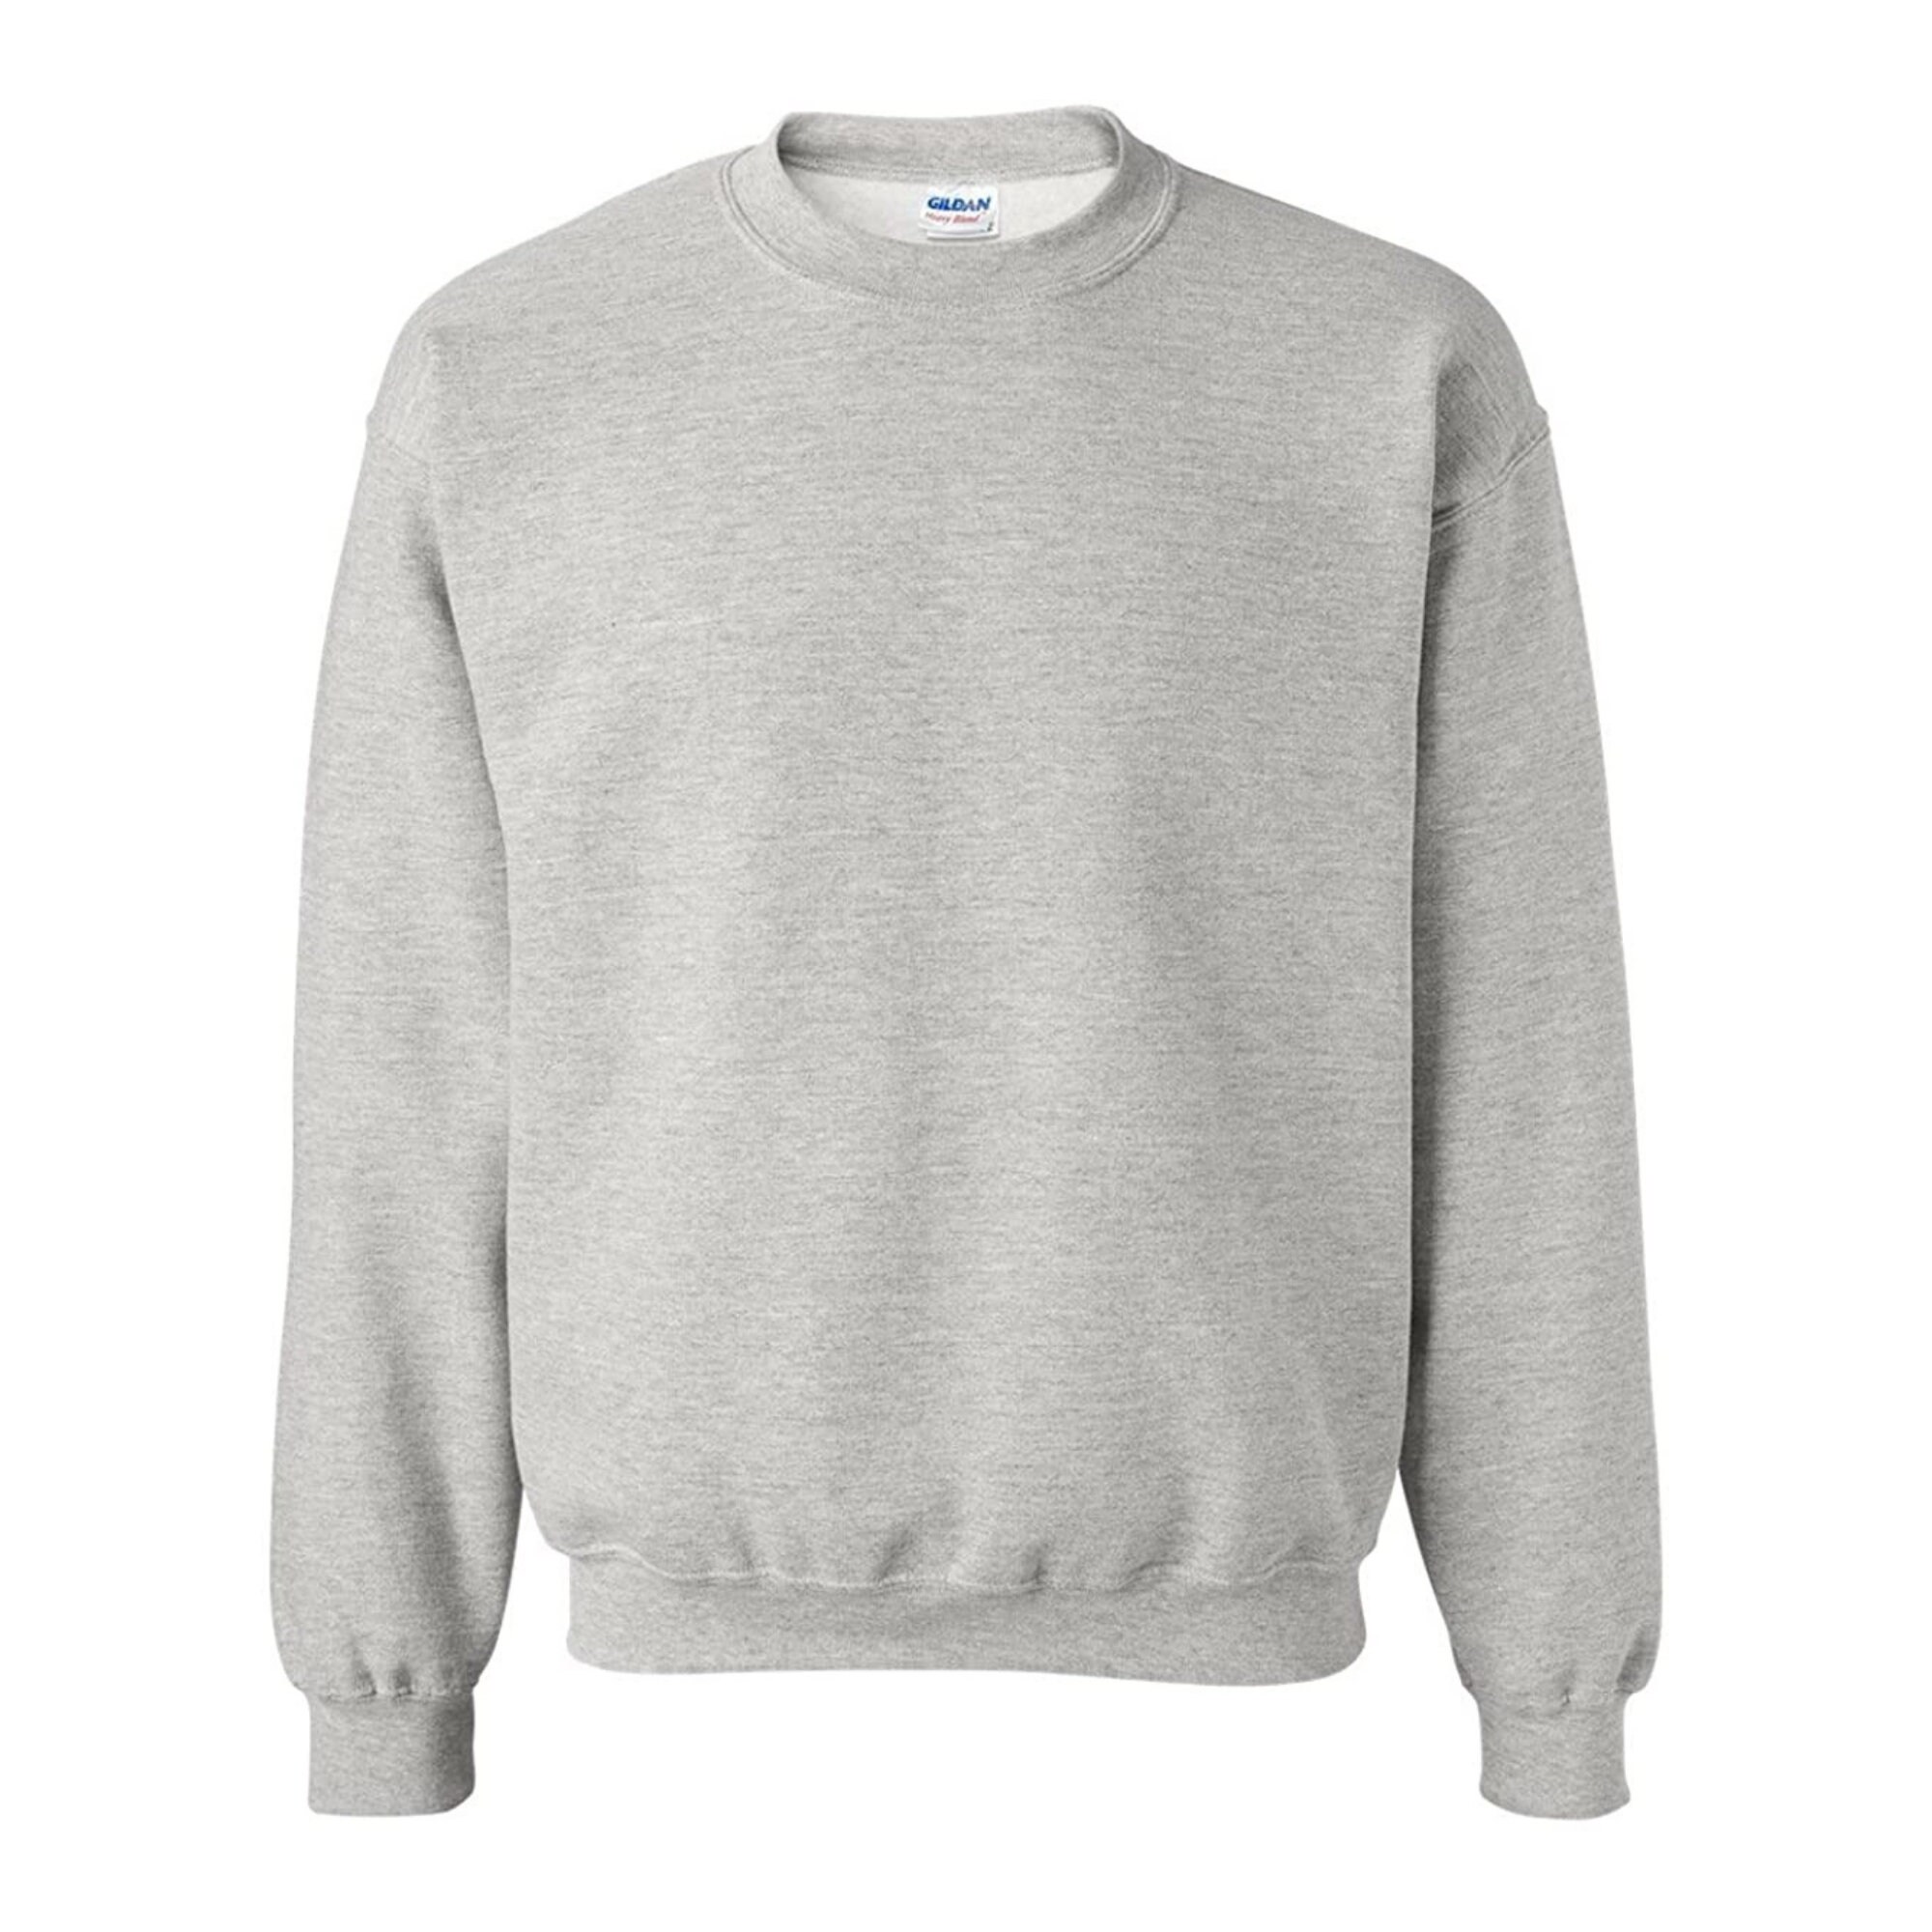 Oversized Sweatshirt Plain Sweatshirt Cozy Gifts Gift for | Etsy